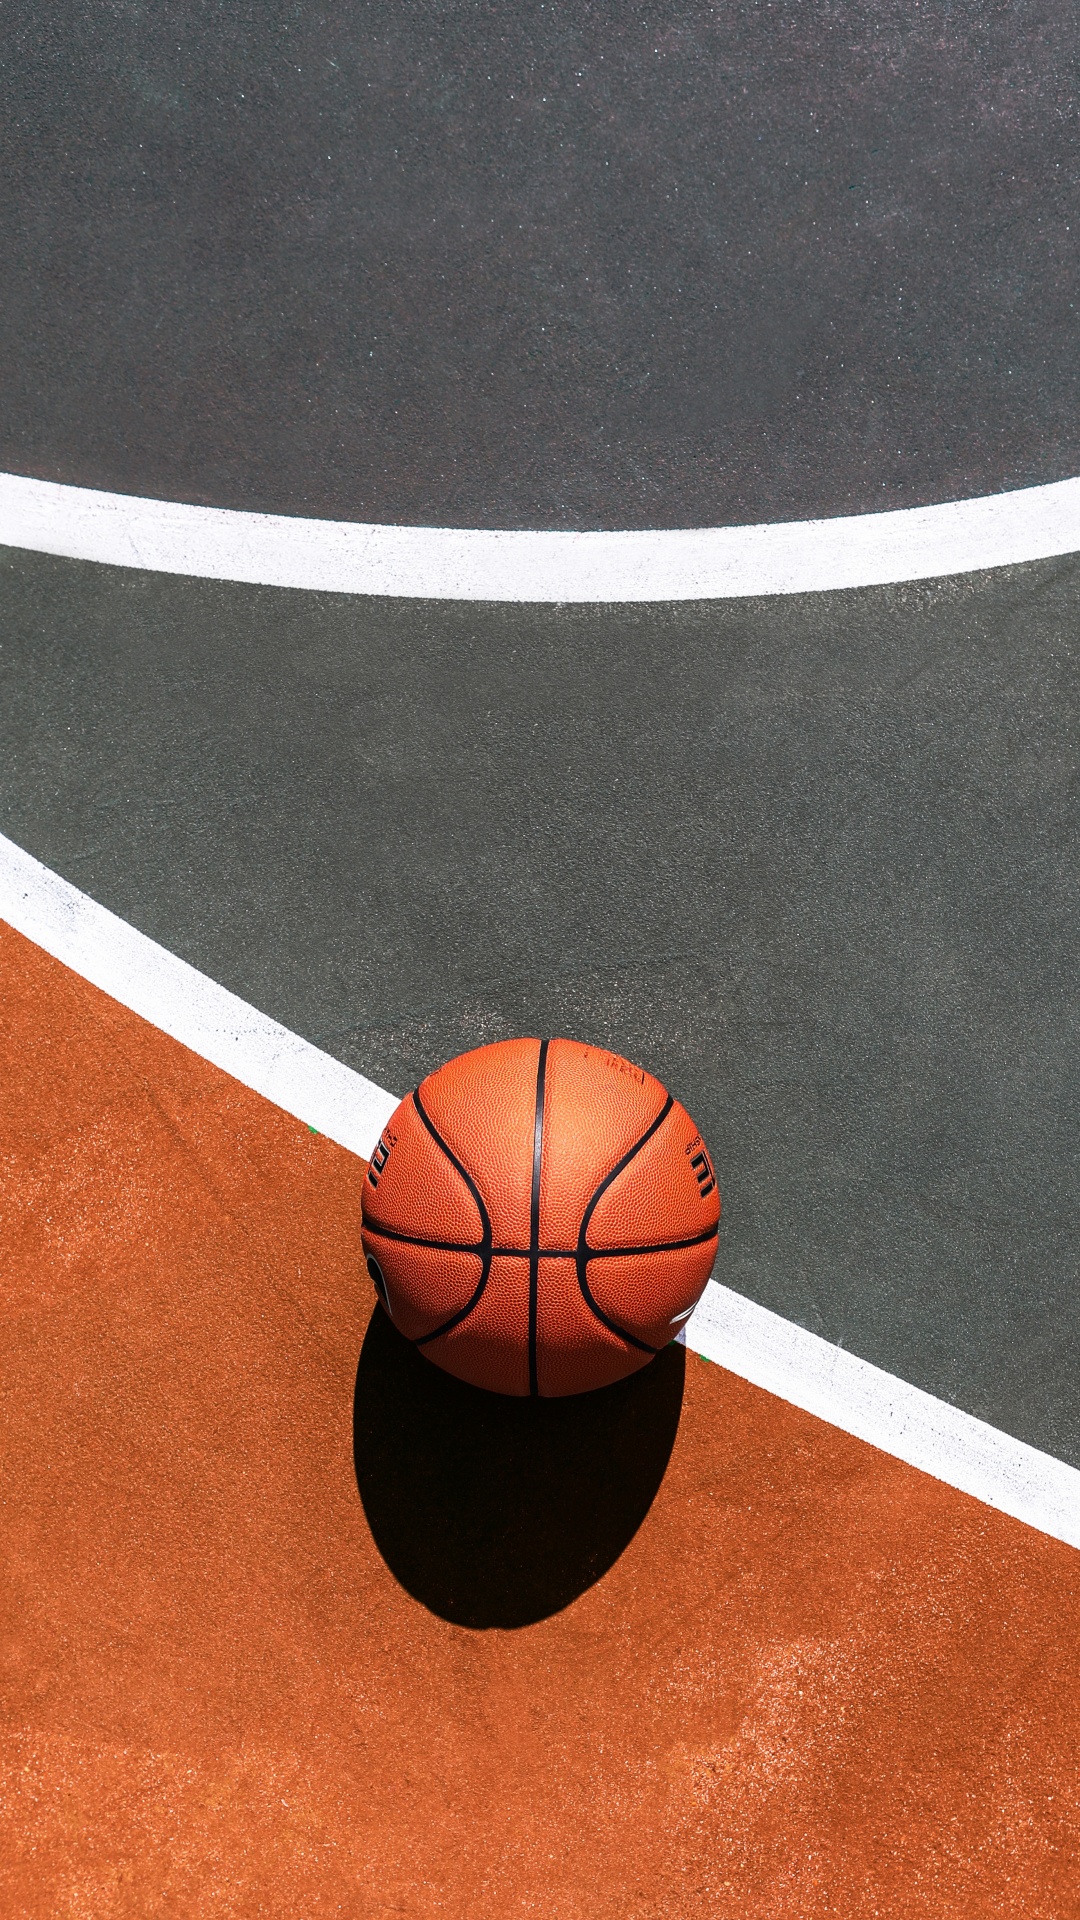 篮球, 篮球场, 运动场地, 球, 团队运动 壁纸 1080x1920 允许